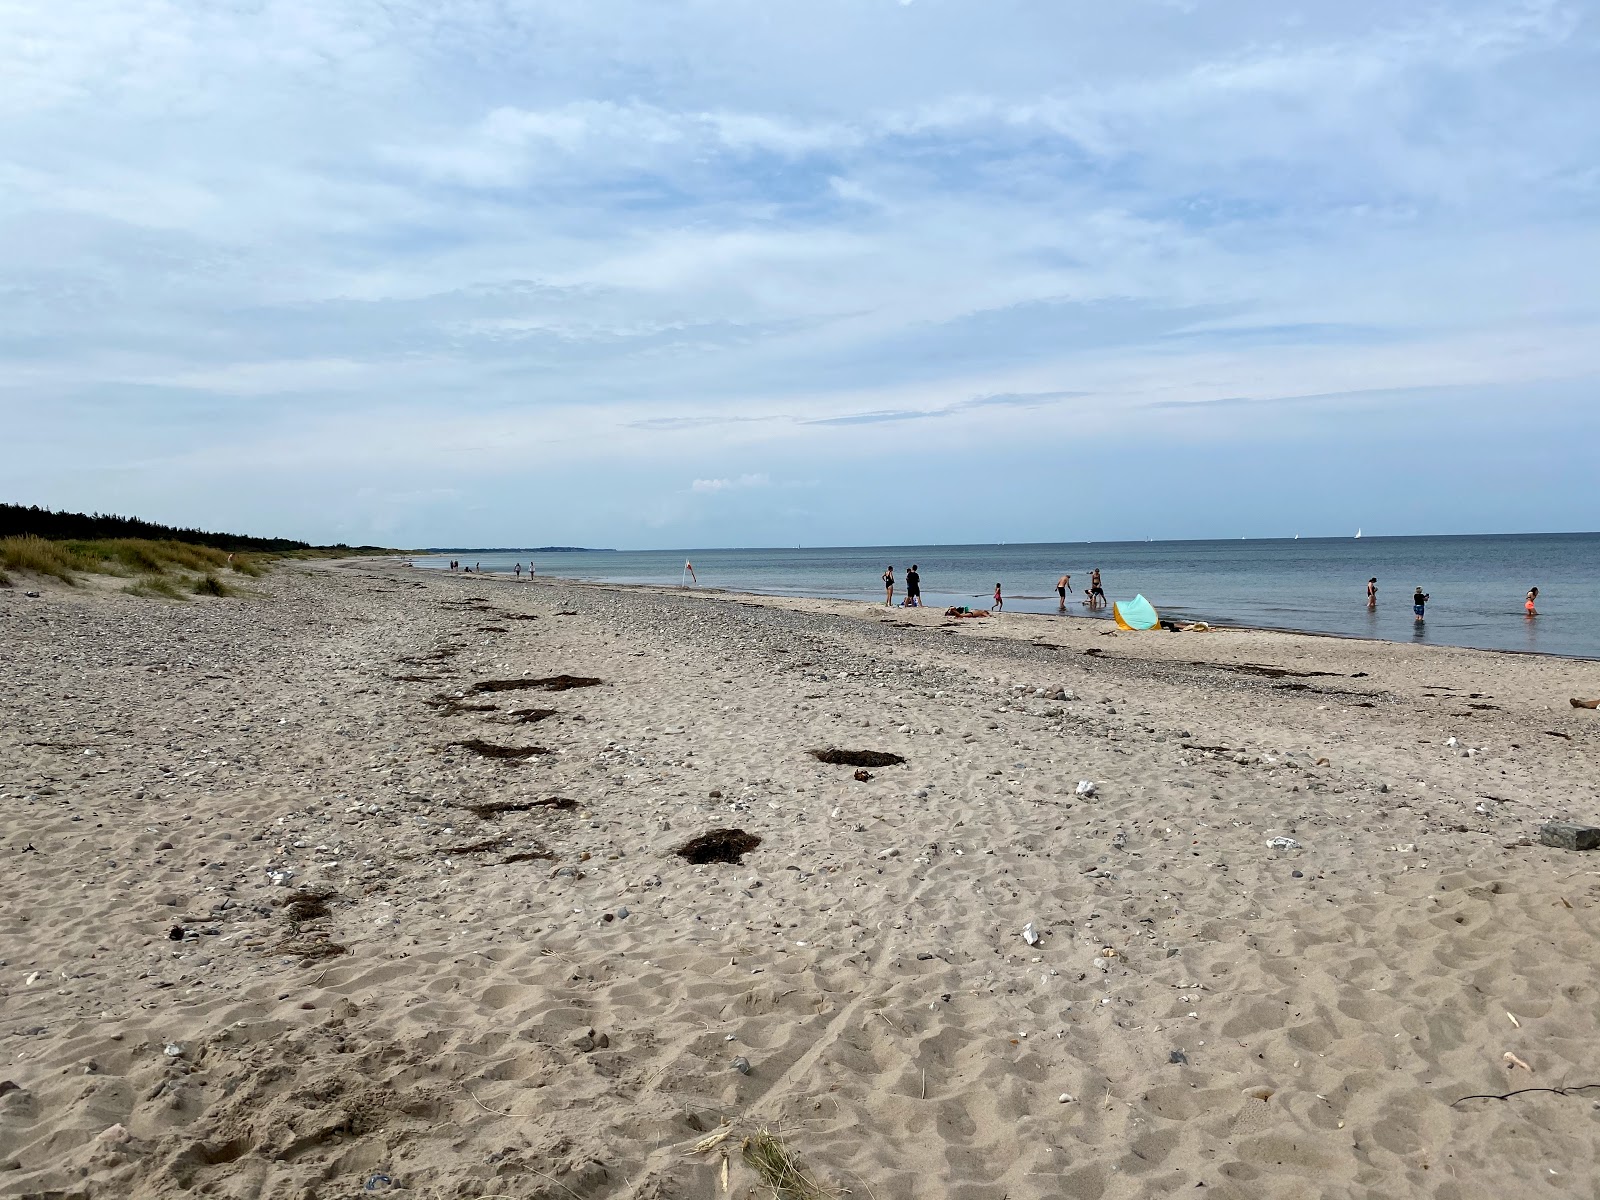 Zdjęcie Tisvildeleje Beach - popularne miejsce wśród znawców relaksu